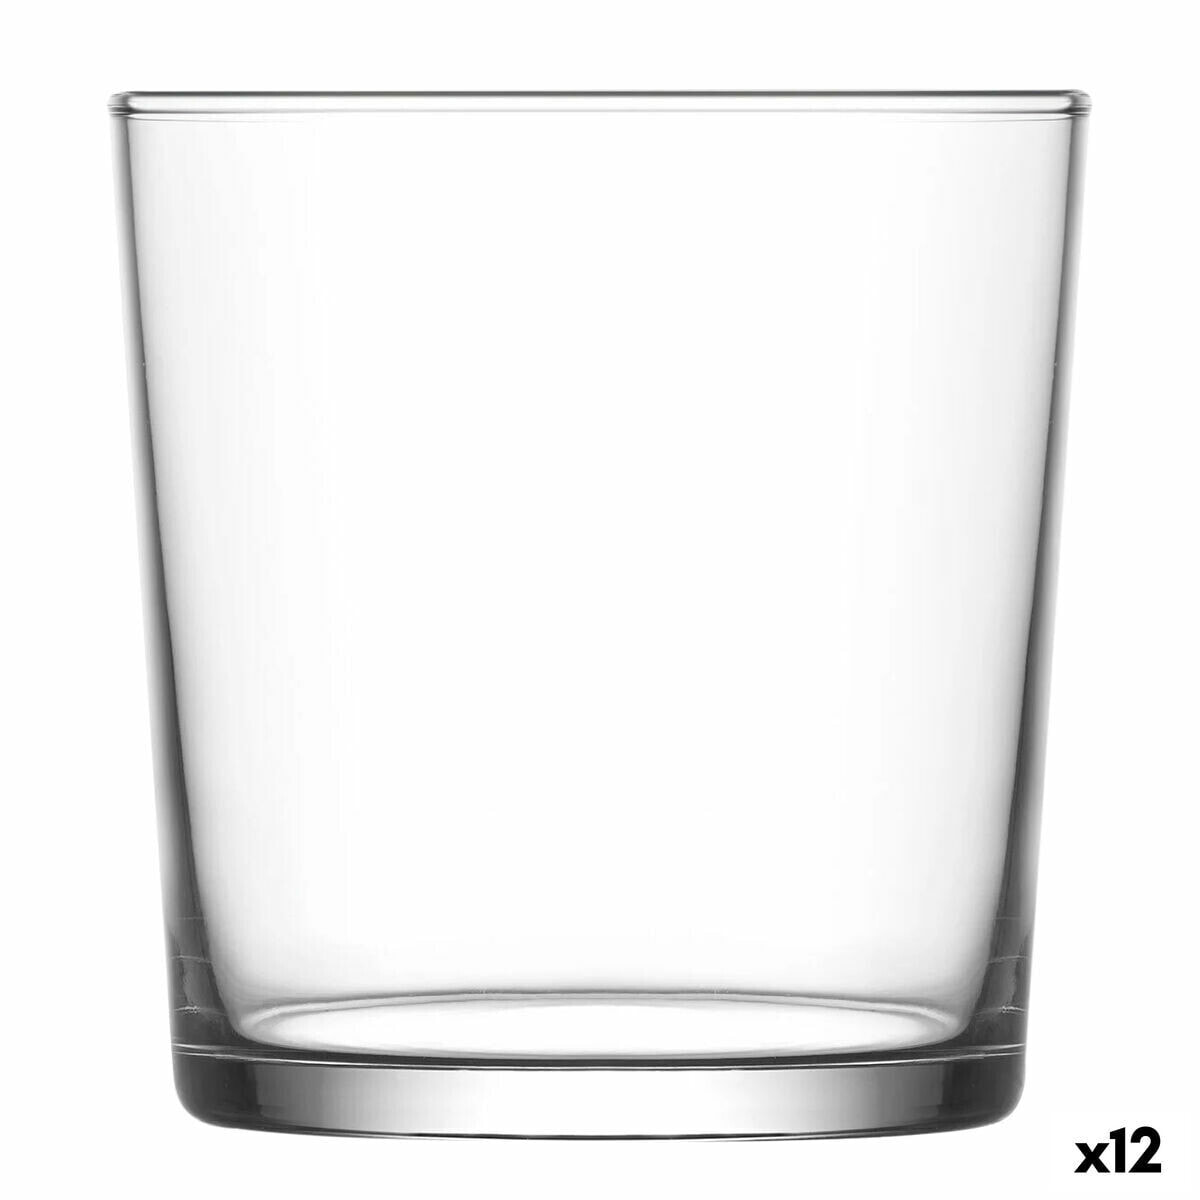 Glass LAV Cadiz Tempered glass 345 ml (12 Units)